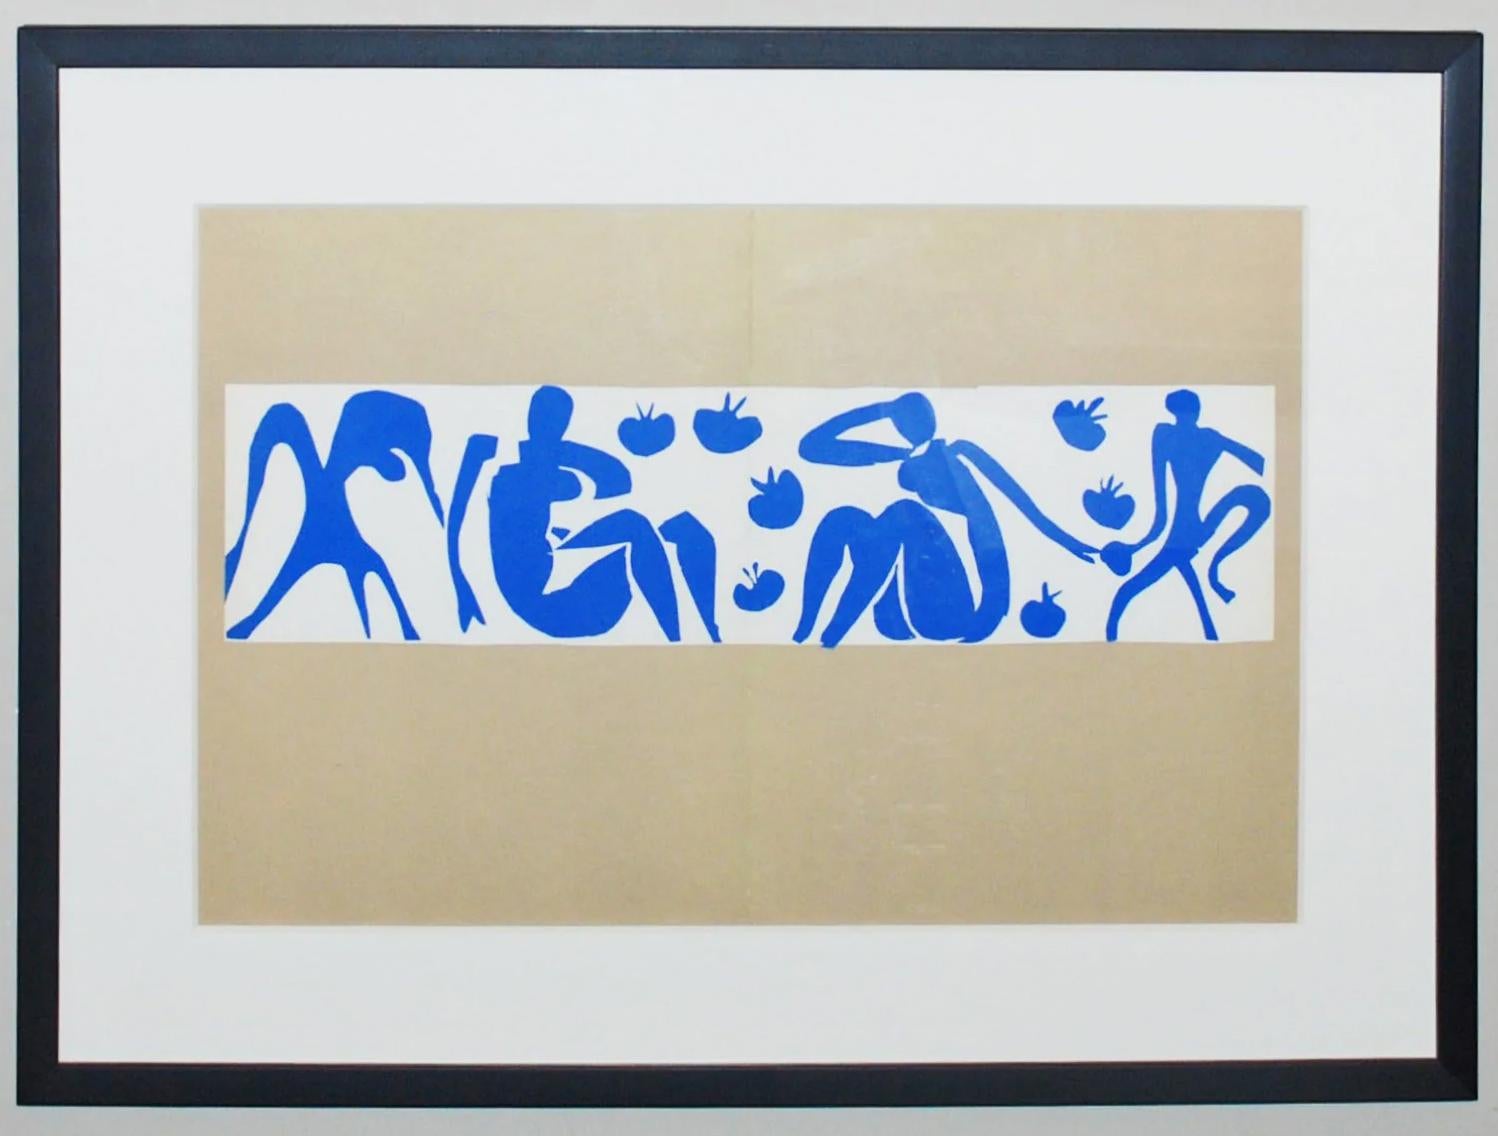 Frauen und Singles (Abstrakt), Print, von (after) Henri Matisse